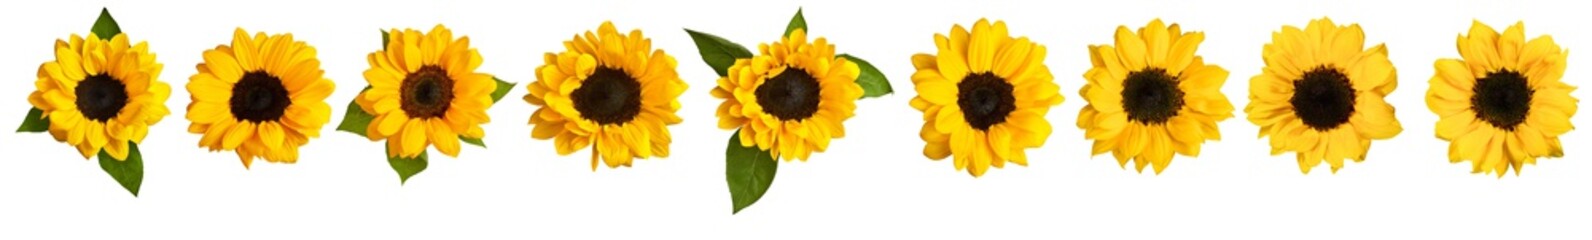 Obraz premium Set of photos of shiny yellow sunflowers, isolated on white